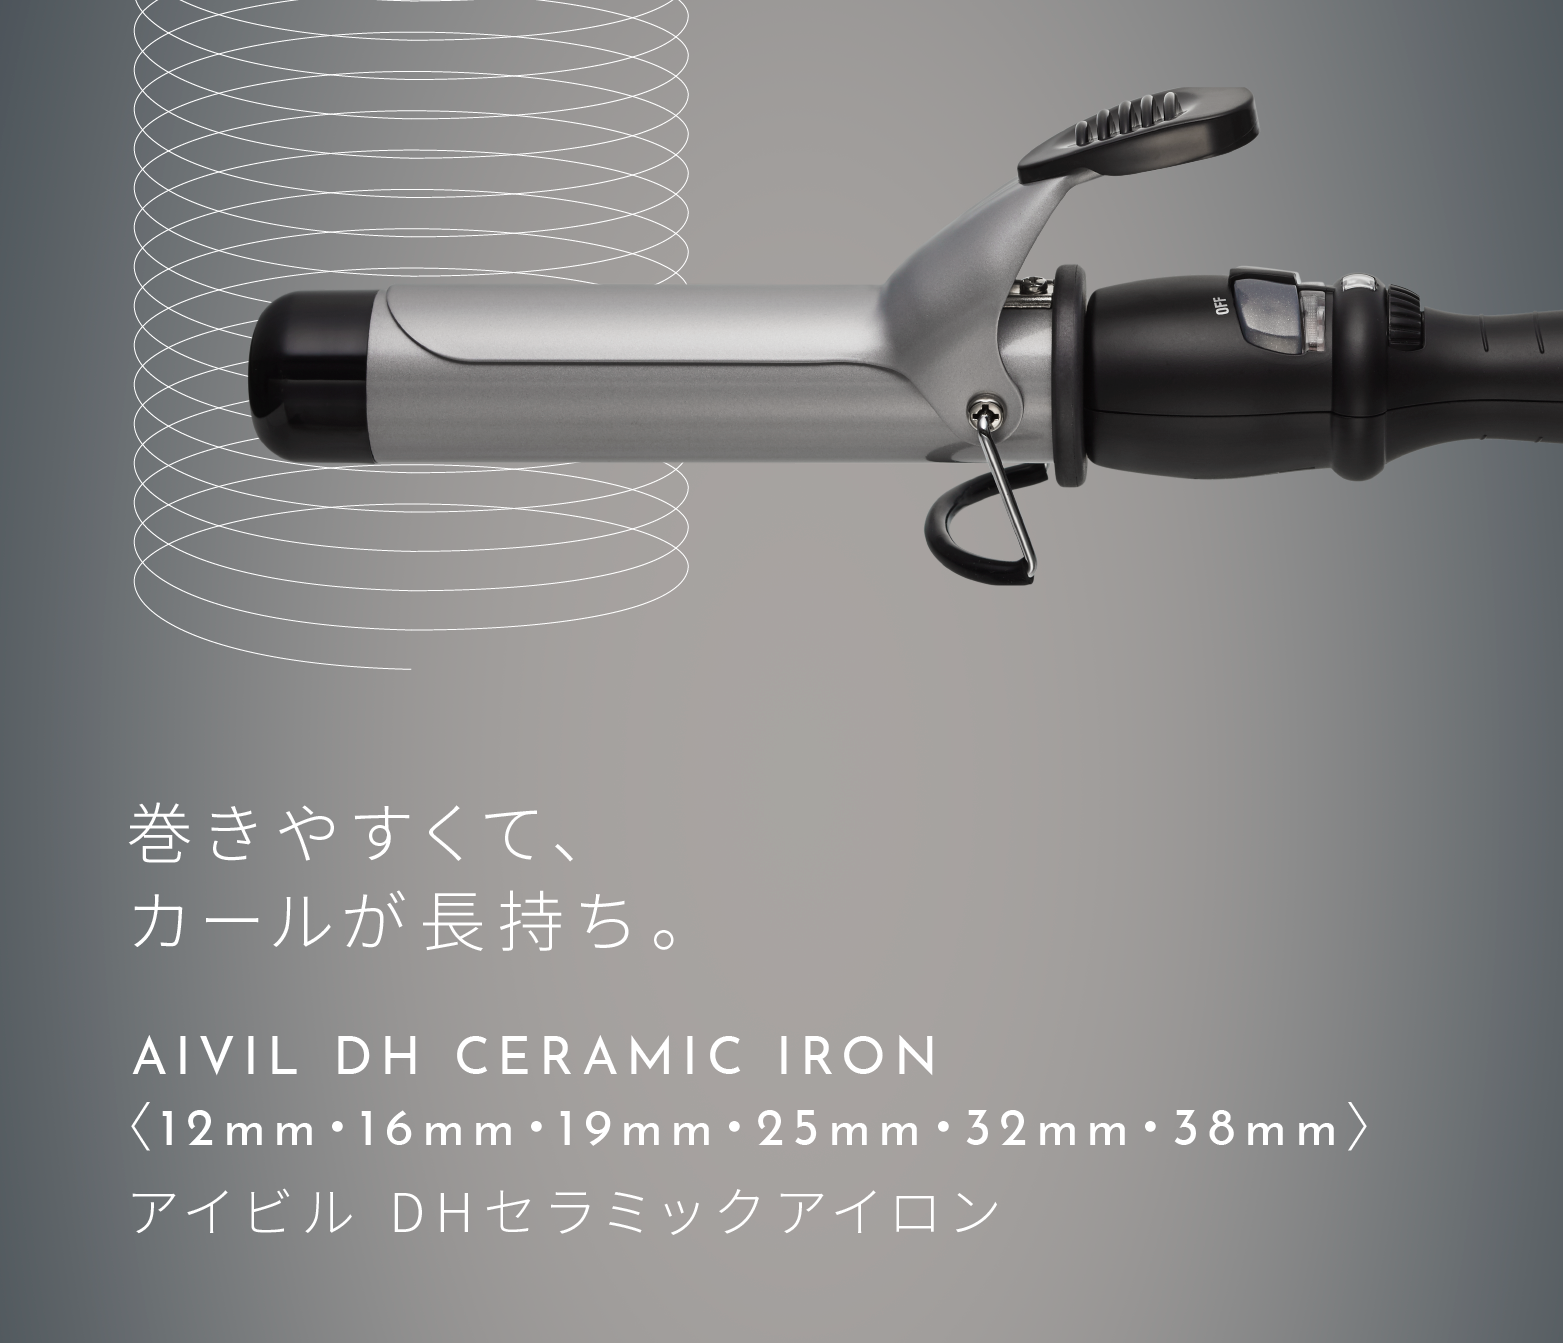 アイビル DHセラミックアイロン - 【公式】プロ愛用のロングセラー美容機器ブランド